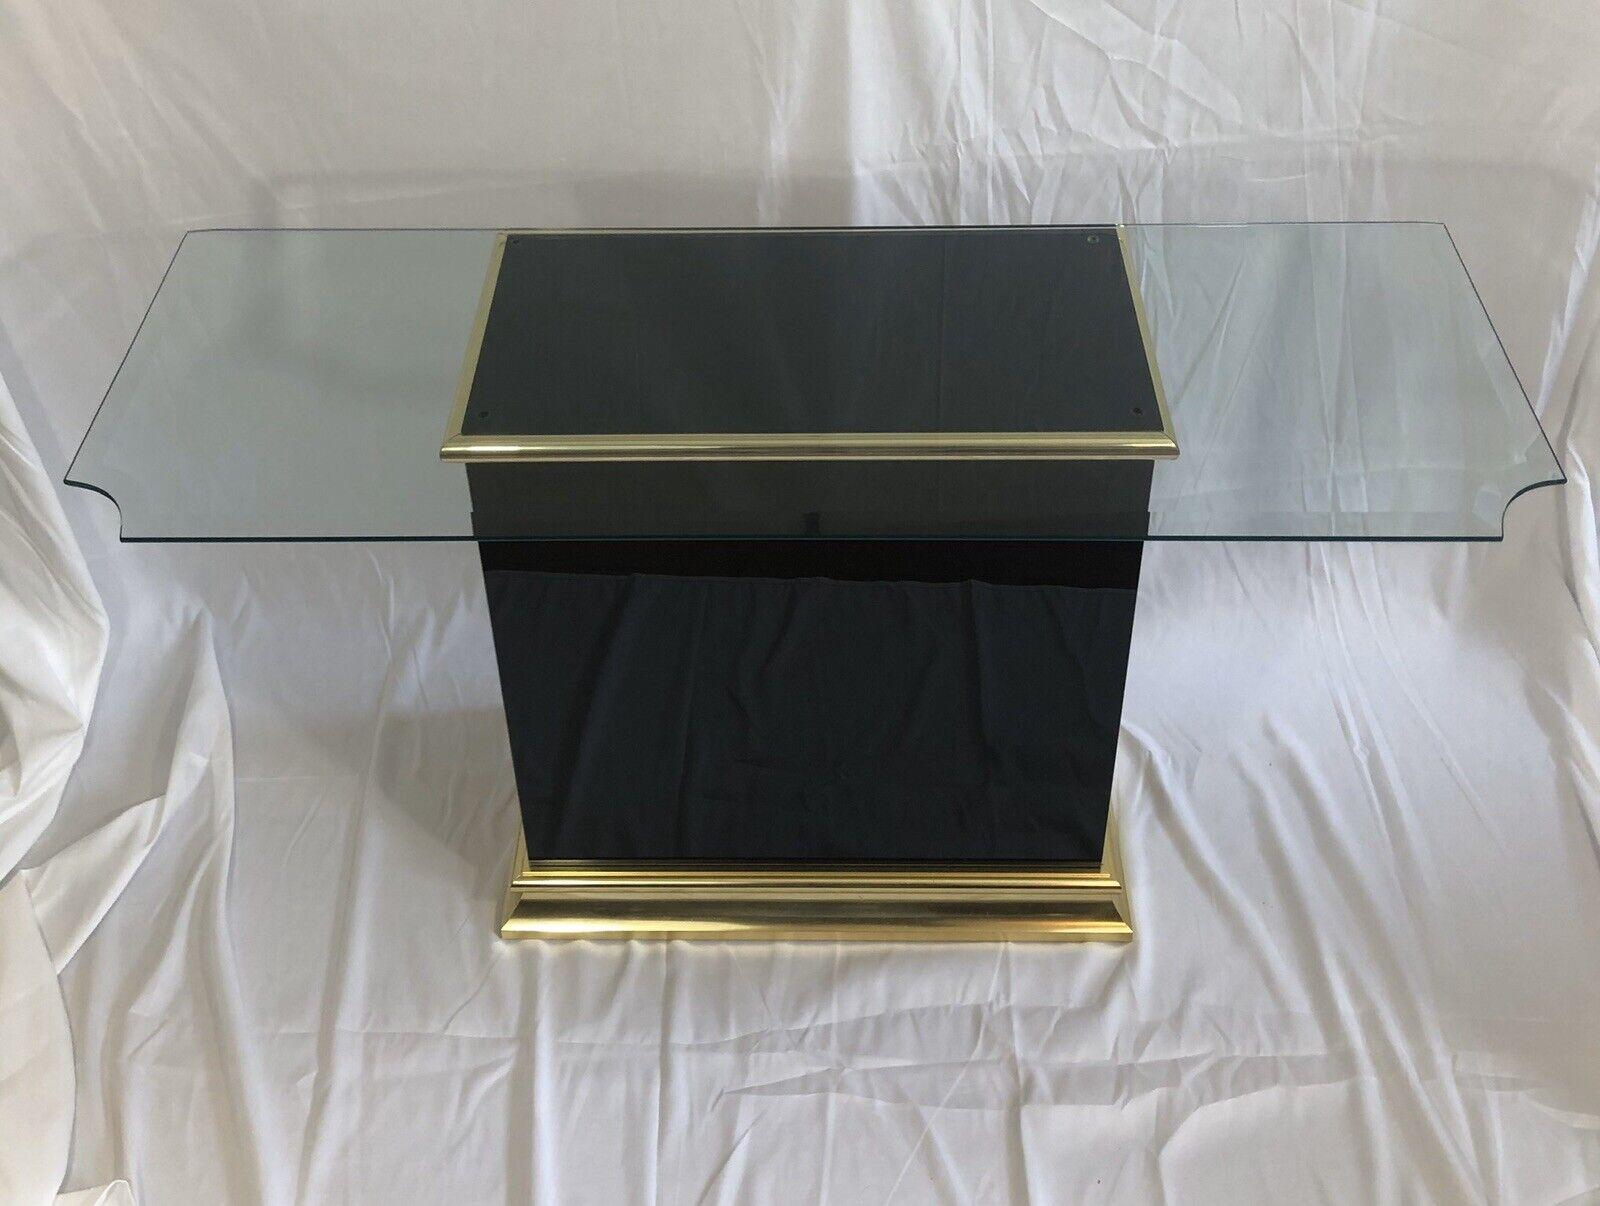 Superbe table console en verre noir avec garniture en laiton poli. Plateau en verre biseauté avec coins crantés pour un profil sophistiqué. Finition 3/4.
Mesures de base :
27,5T x 25,25L x 14P
Mesures du verre
50x18
Livraison à domicile à NYC/Philly